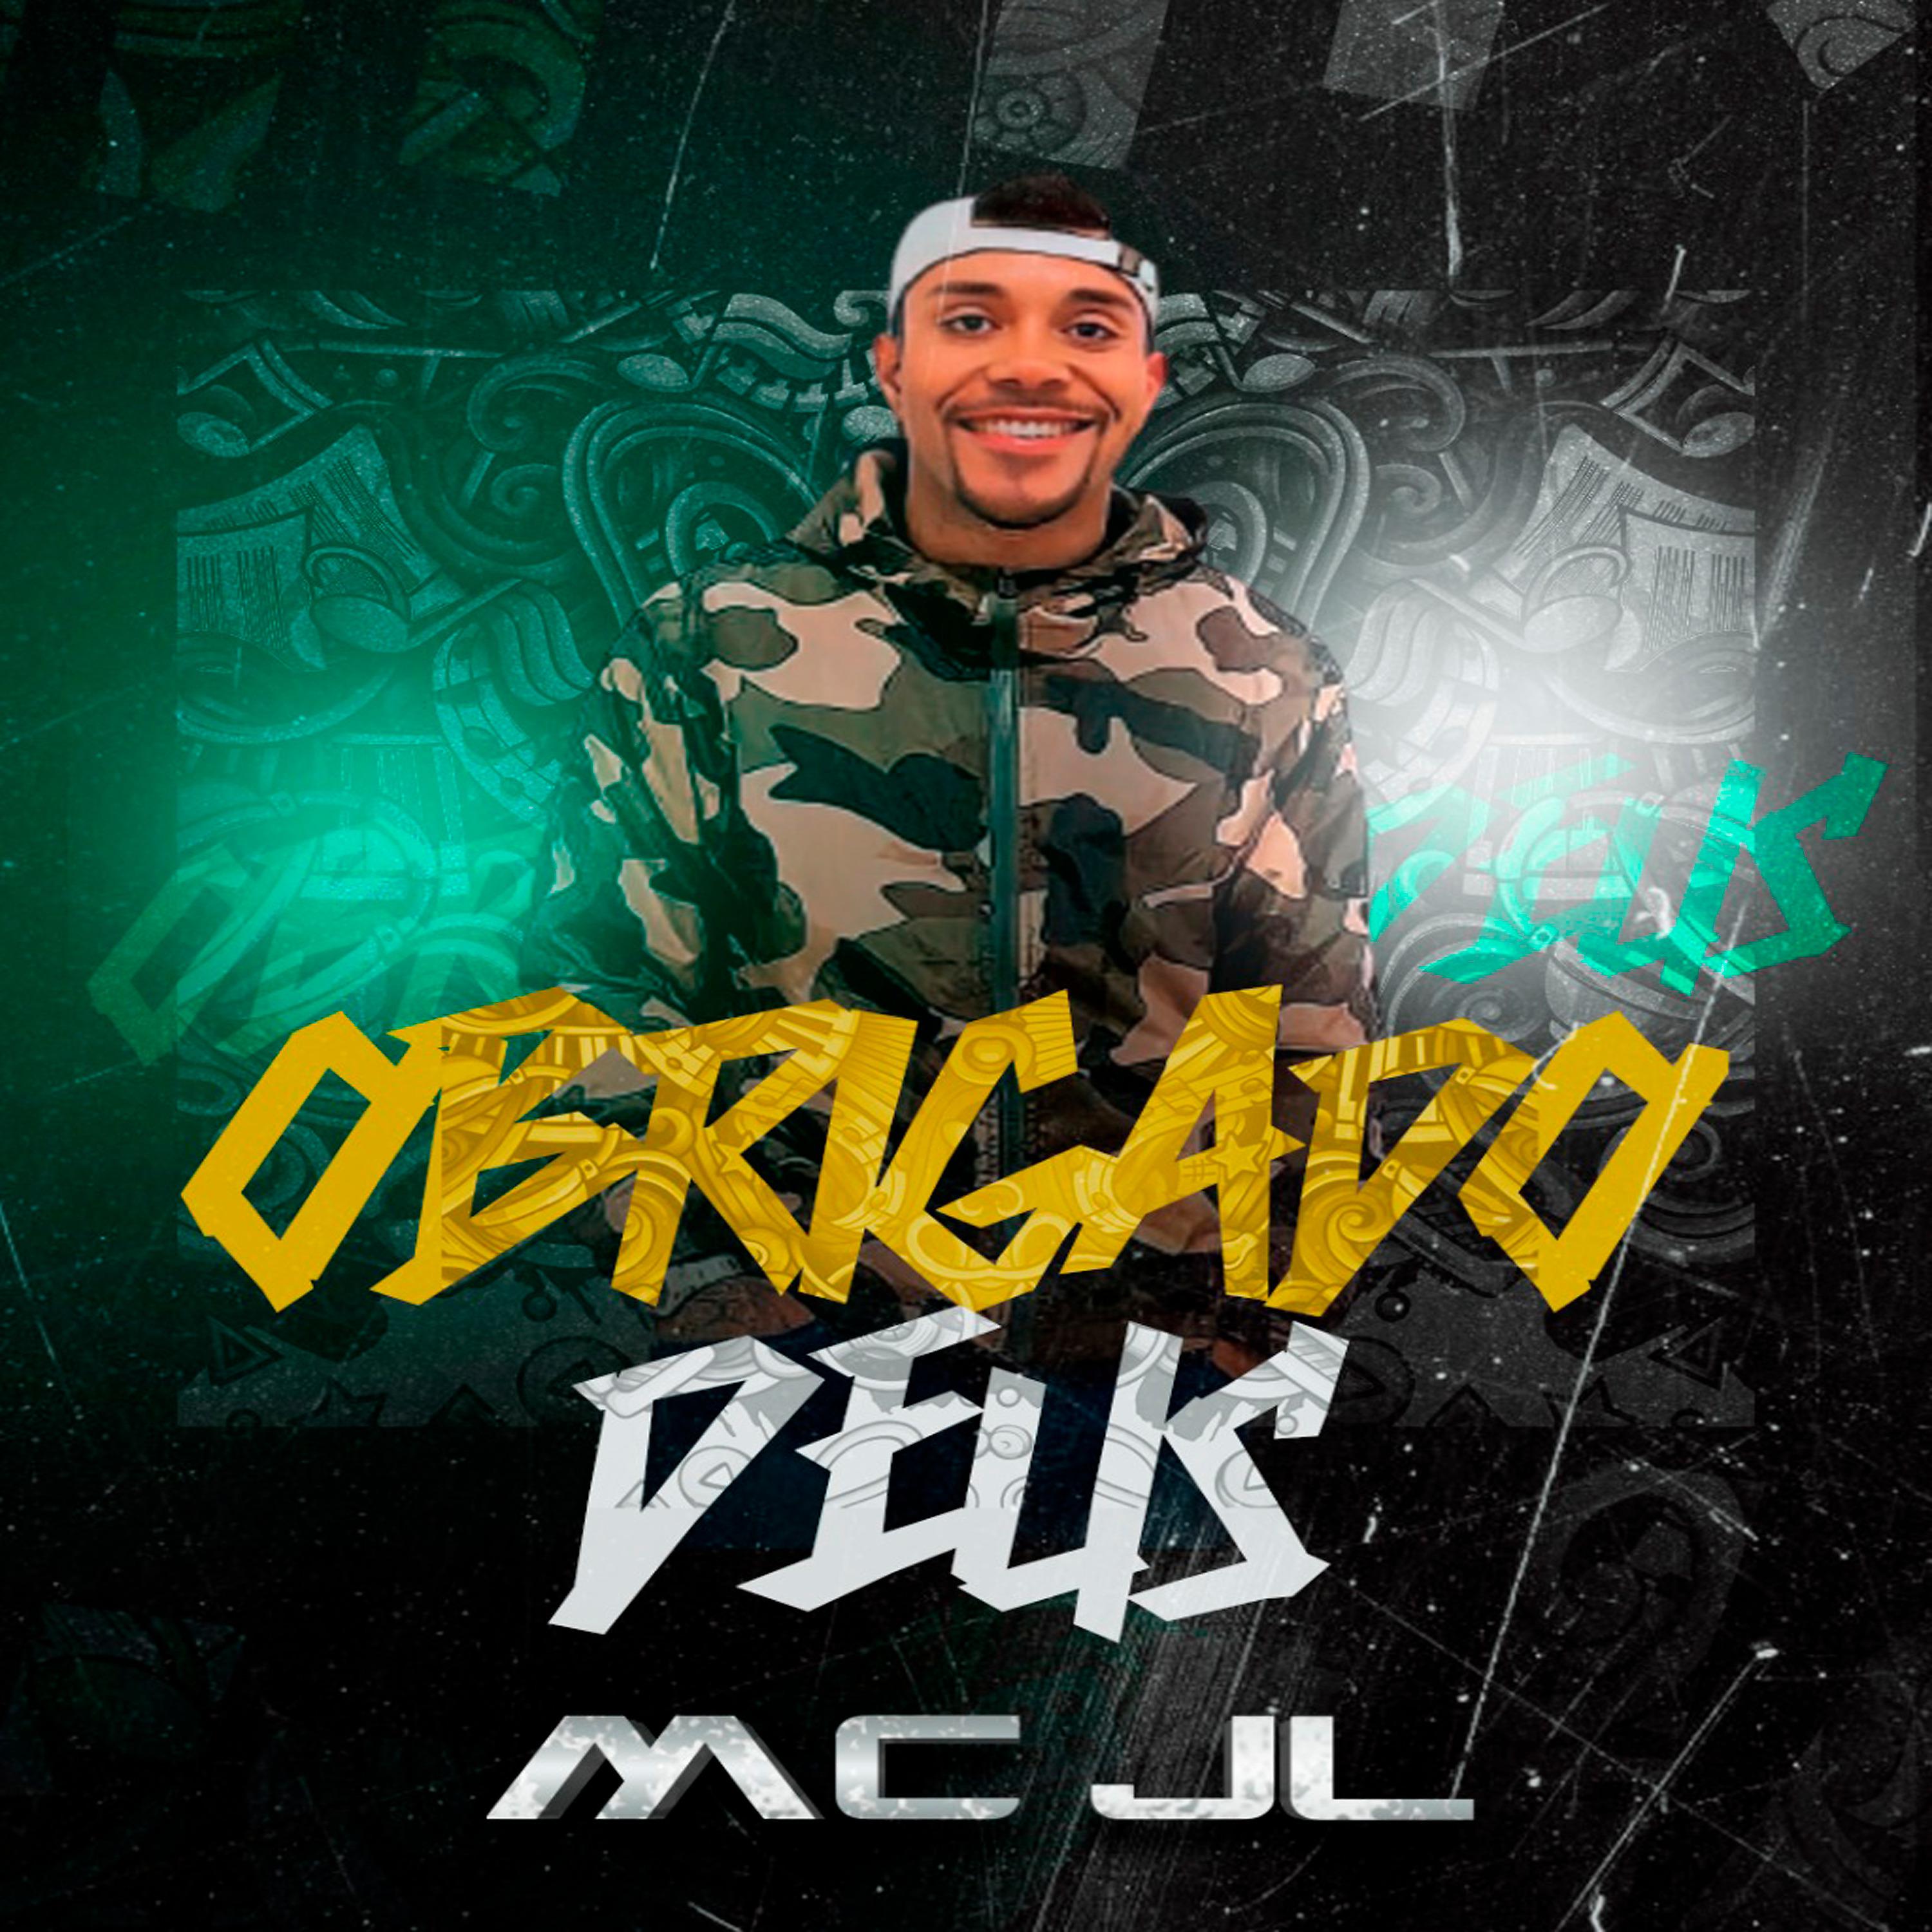 Постер альбома Obrigado Deus